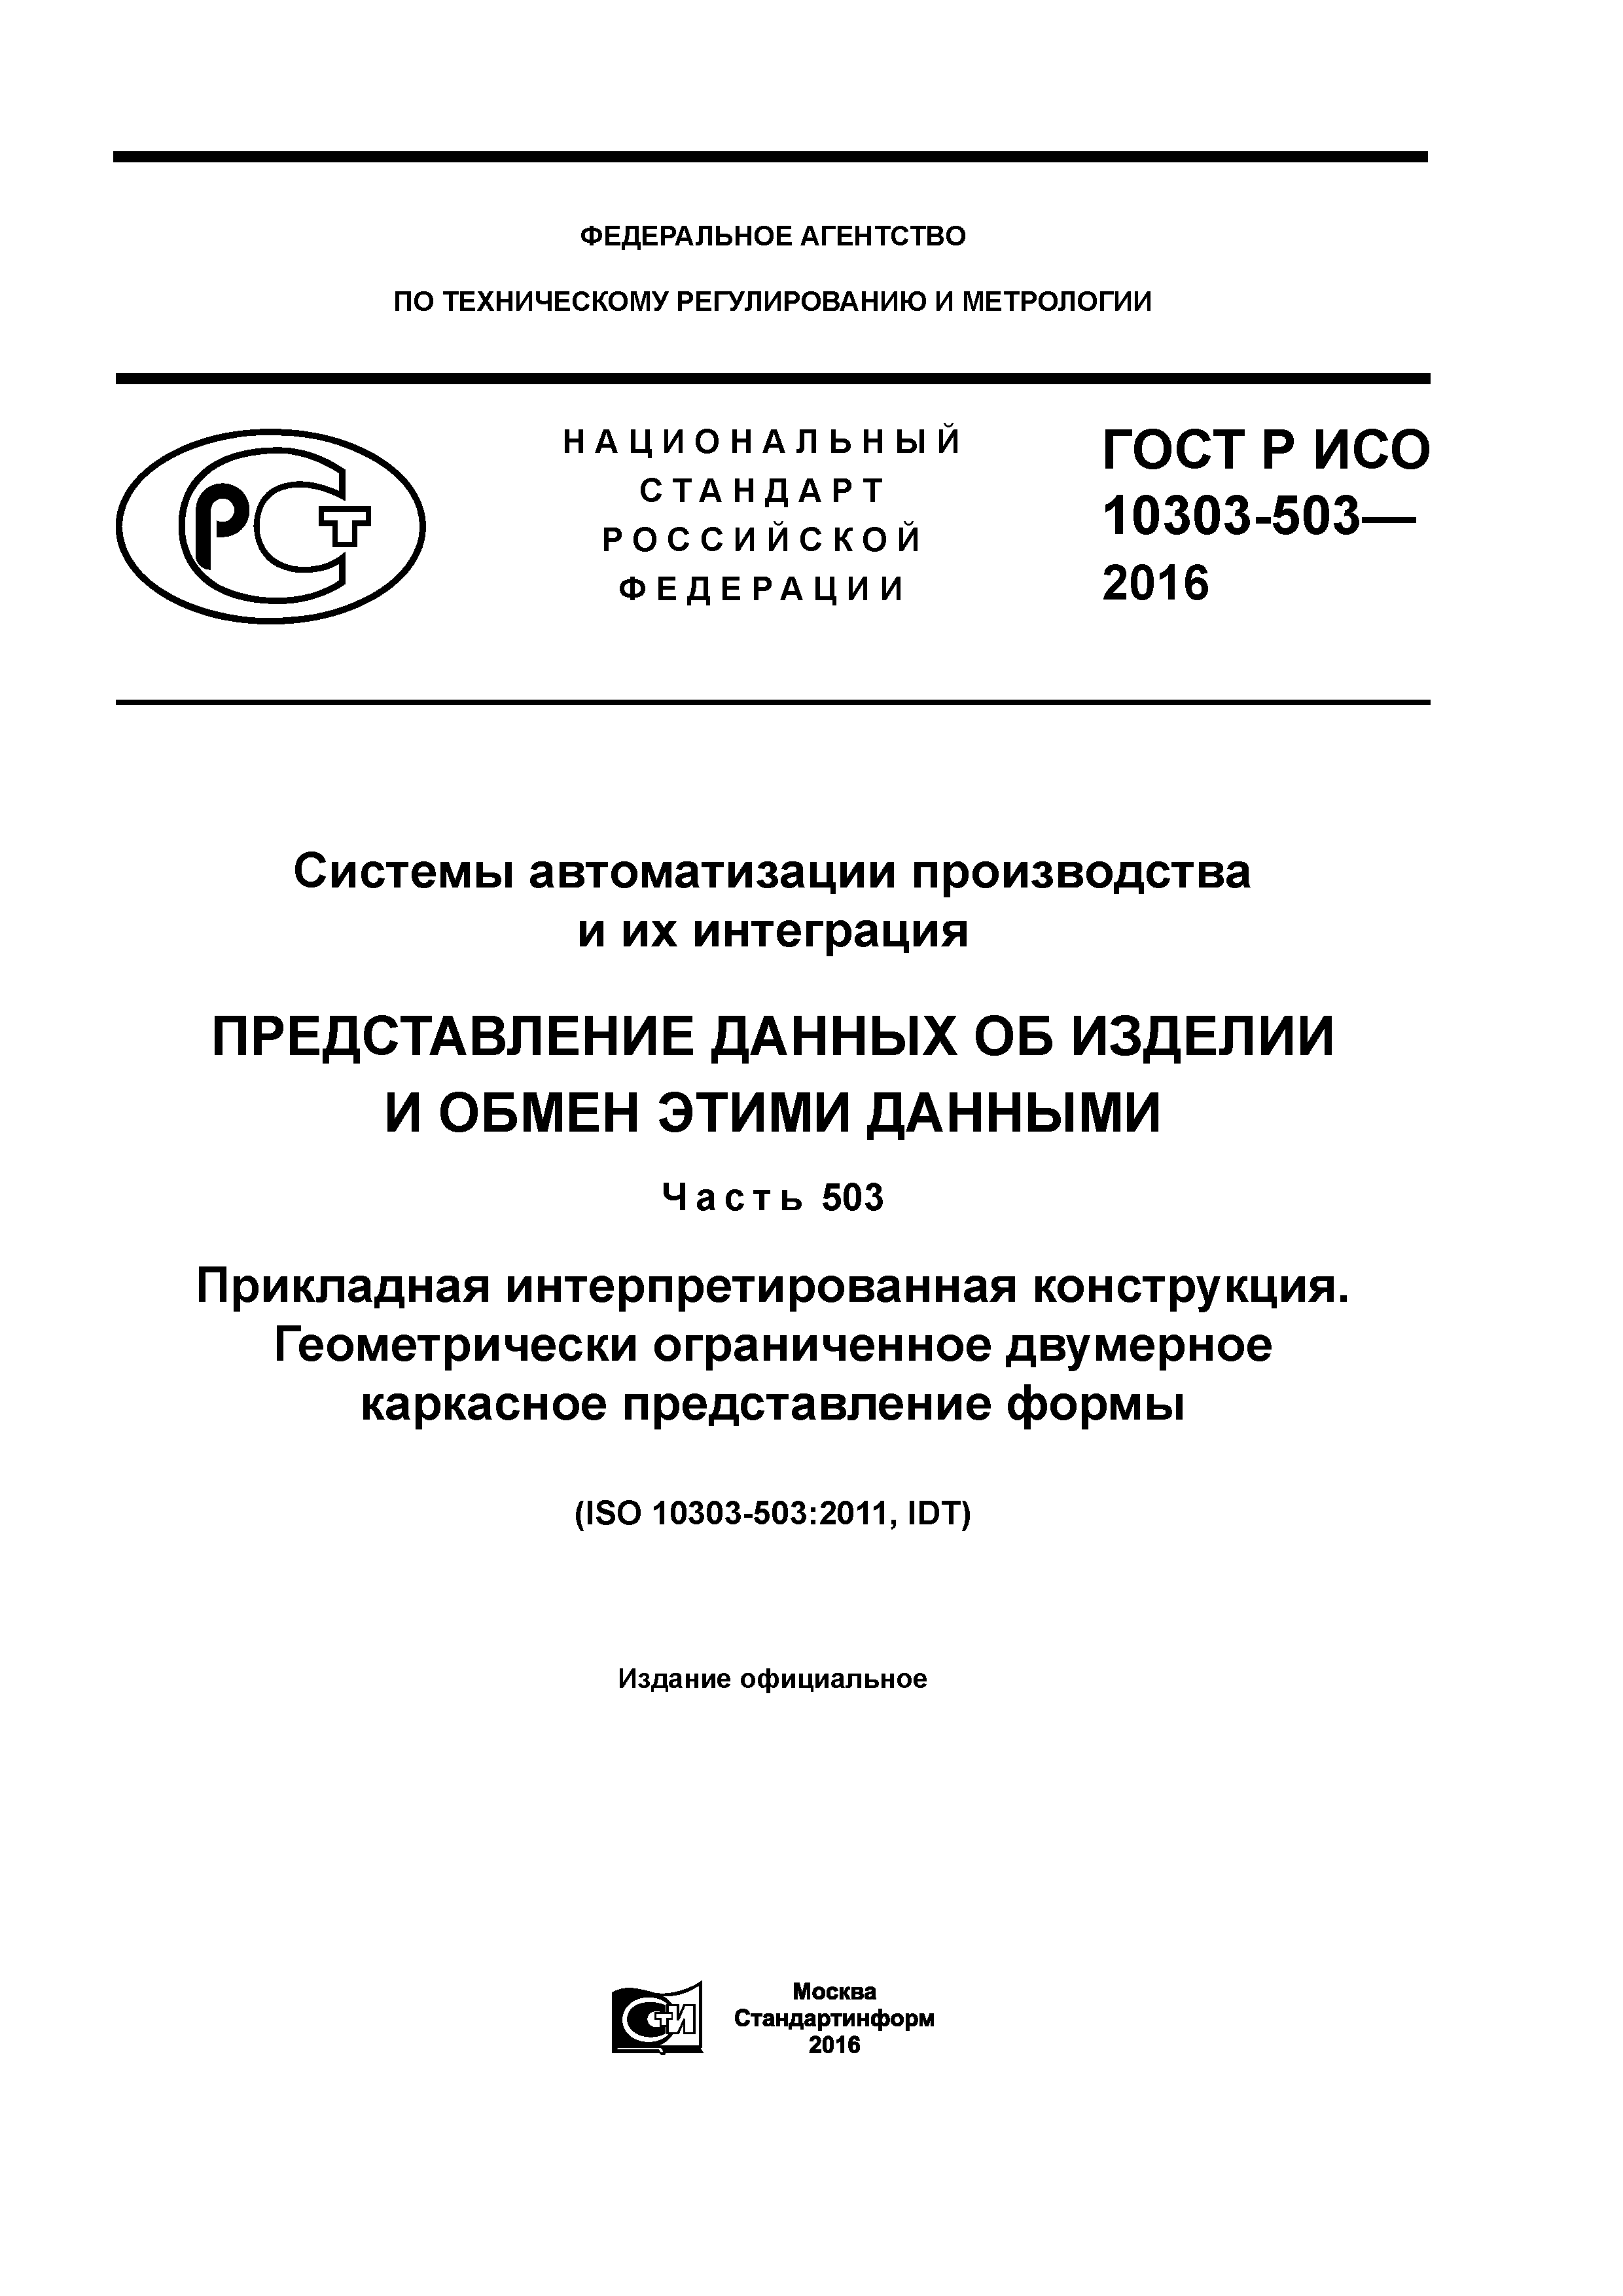 ГОСТ Р ИСО 10303-503-2016